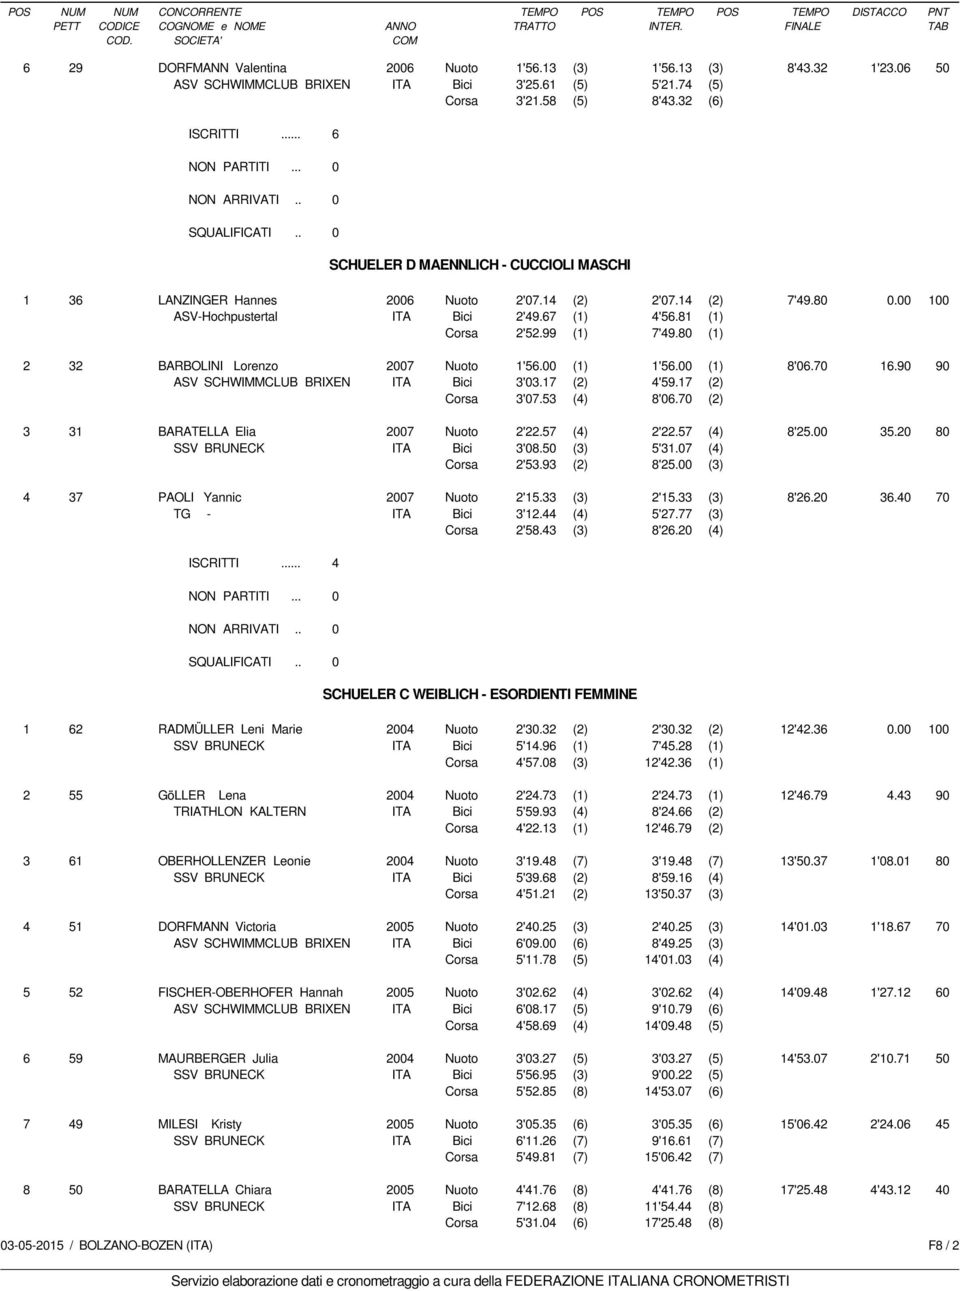 80 (1) 2 32 BARBOLINI Lorenzo 2007 Nuoto 1'56.00 (1) 1'56.00 (1) 8'06.70 16.90 90 ASV SCHWIMMCLUB BRIXEN Bici 3'03.17 (2) 4'59.17 (2) Corsa 3'07.53 (4) 8'06.70 (2) 3 31 BARATELLA Elia 2007 Nuoto 2'22.